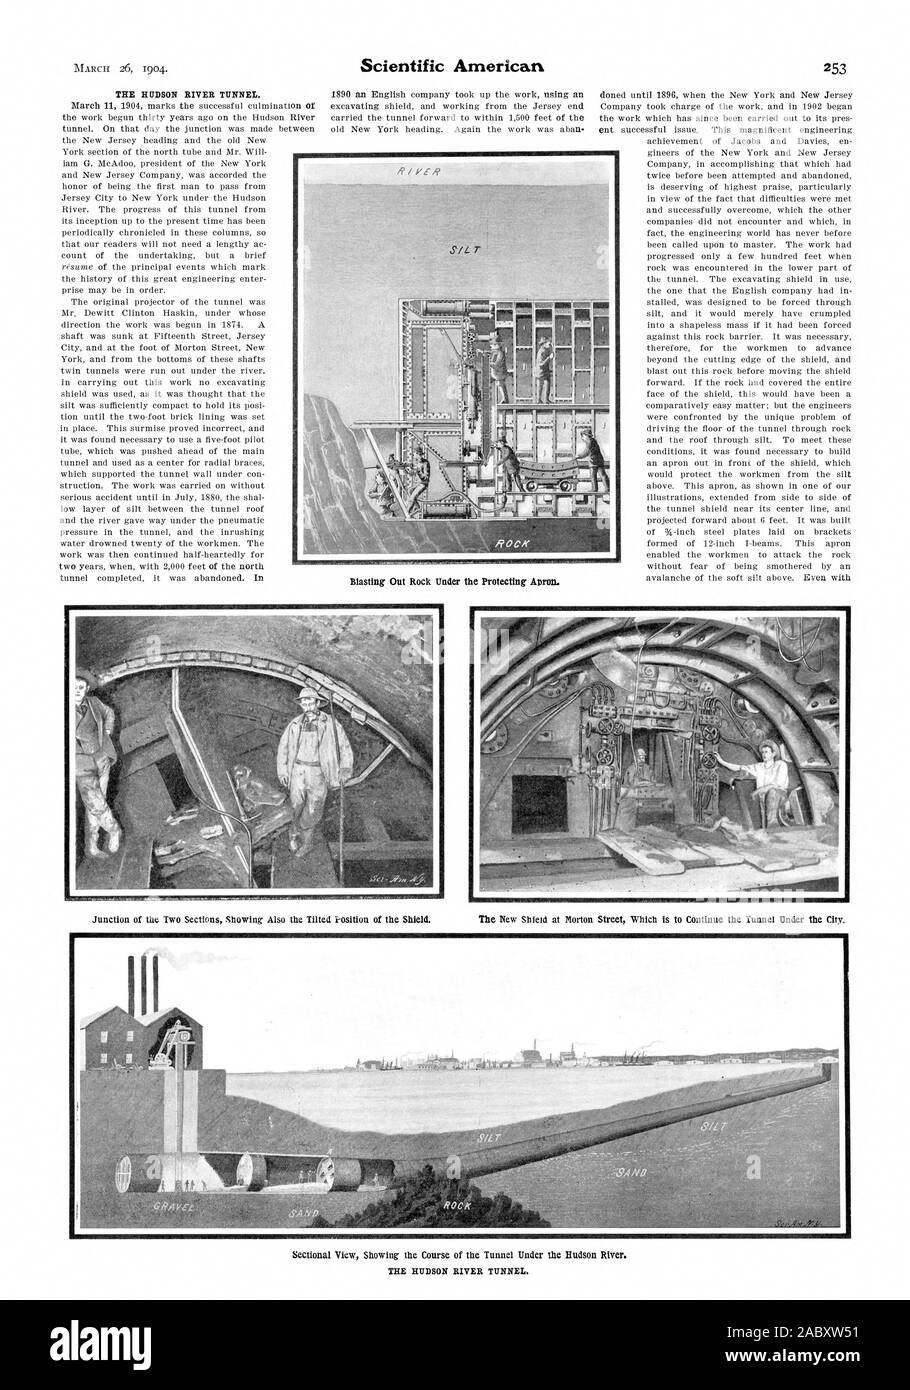 scientific american, 1904-03-26 Stock Photo